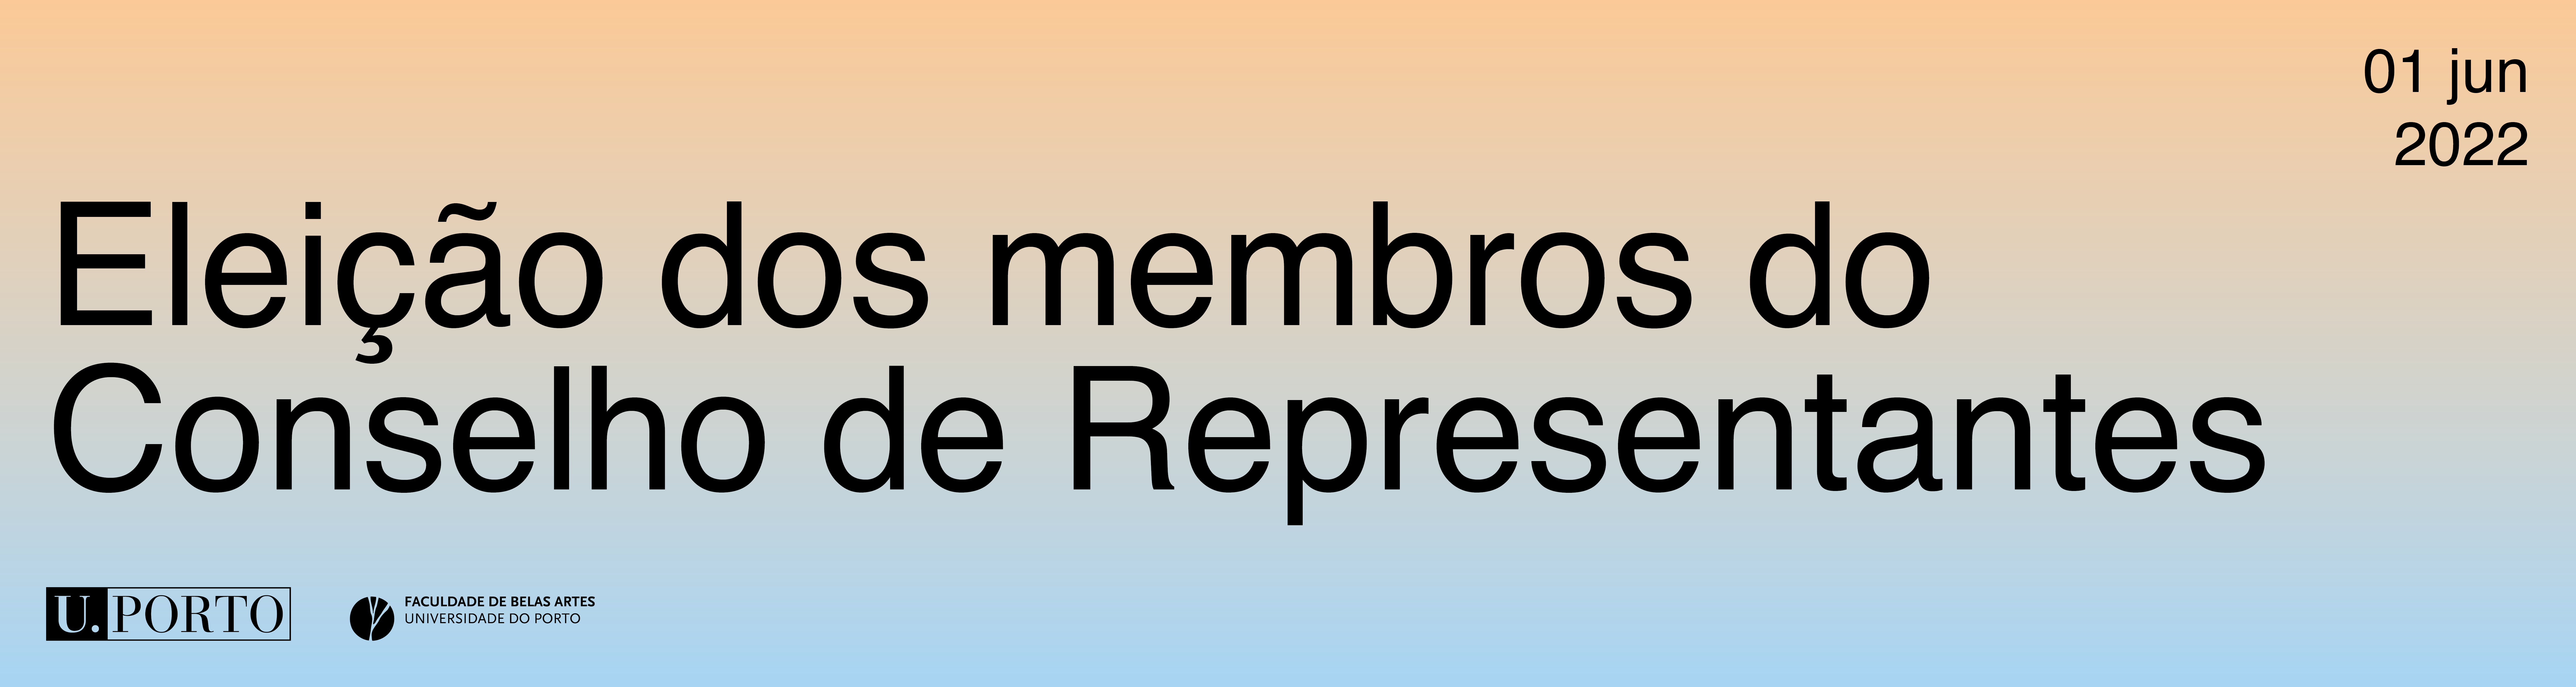 Eleição dos membros do Conselho de Representantes